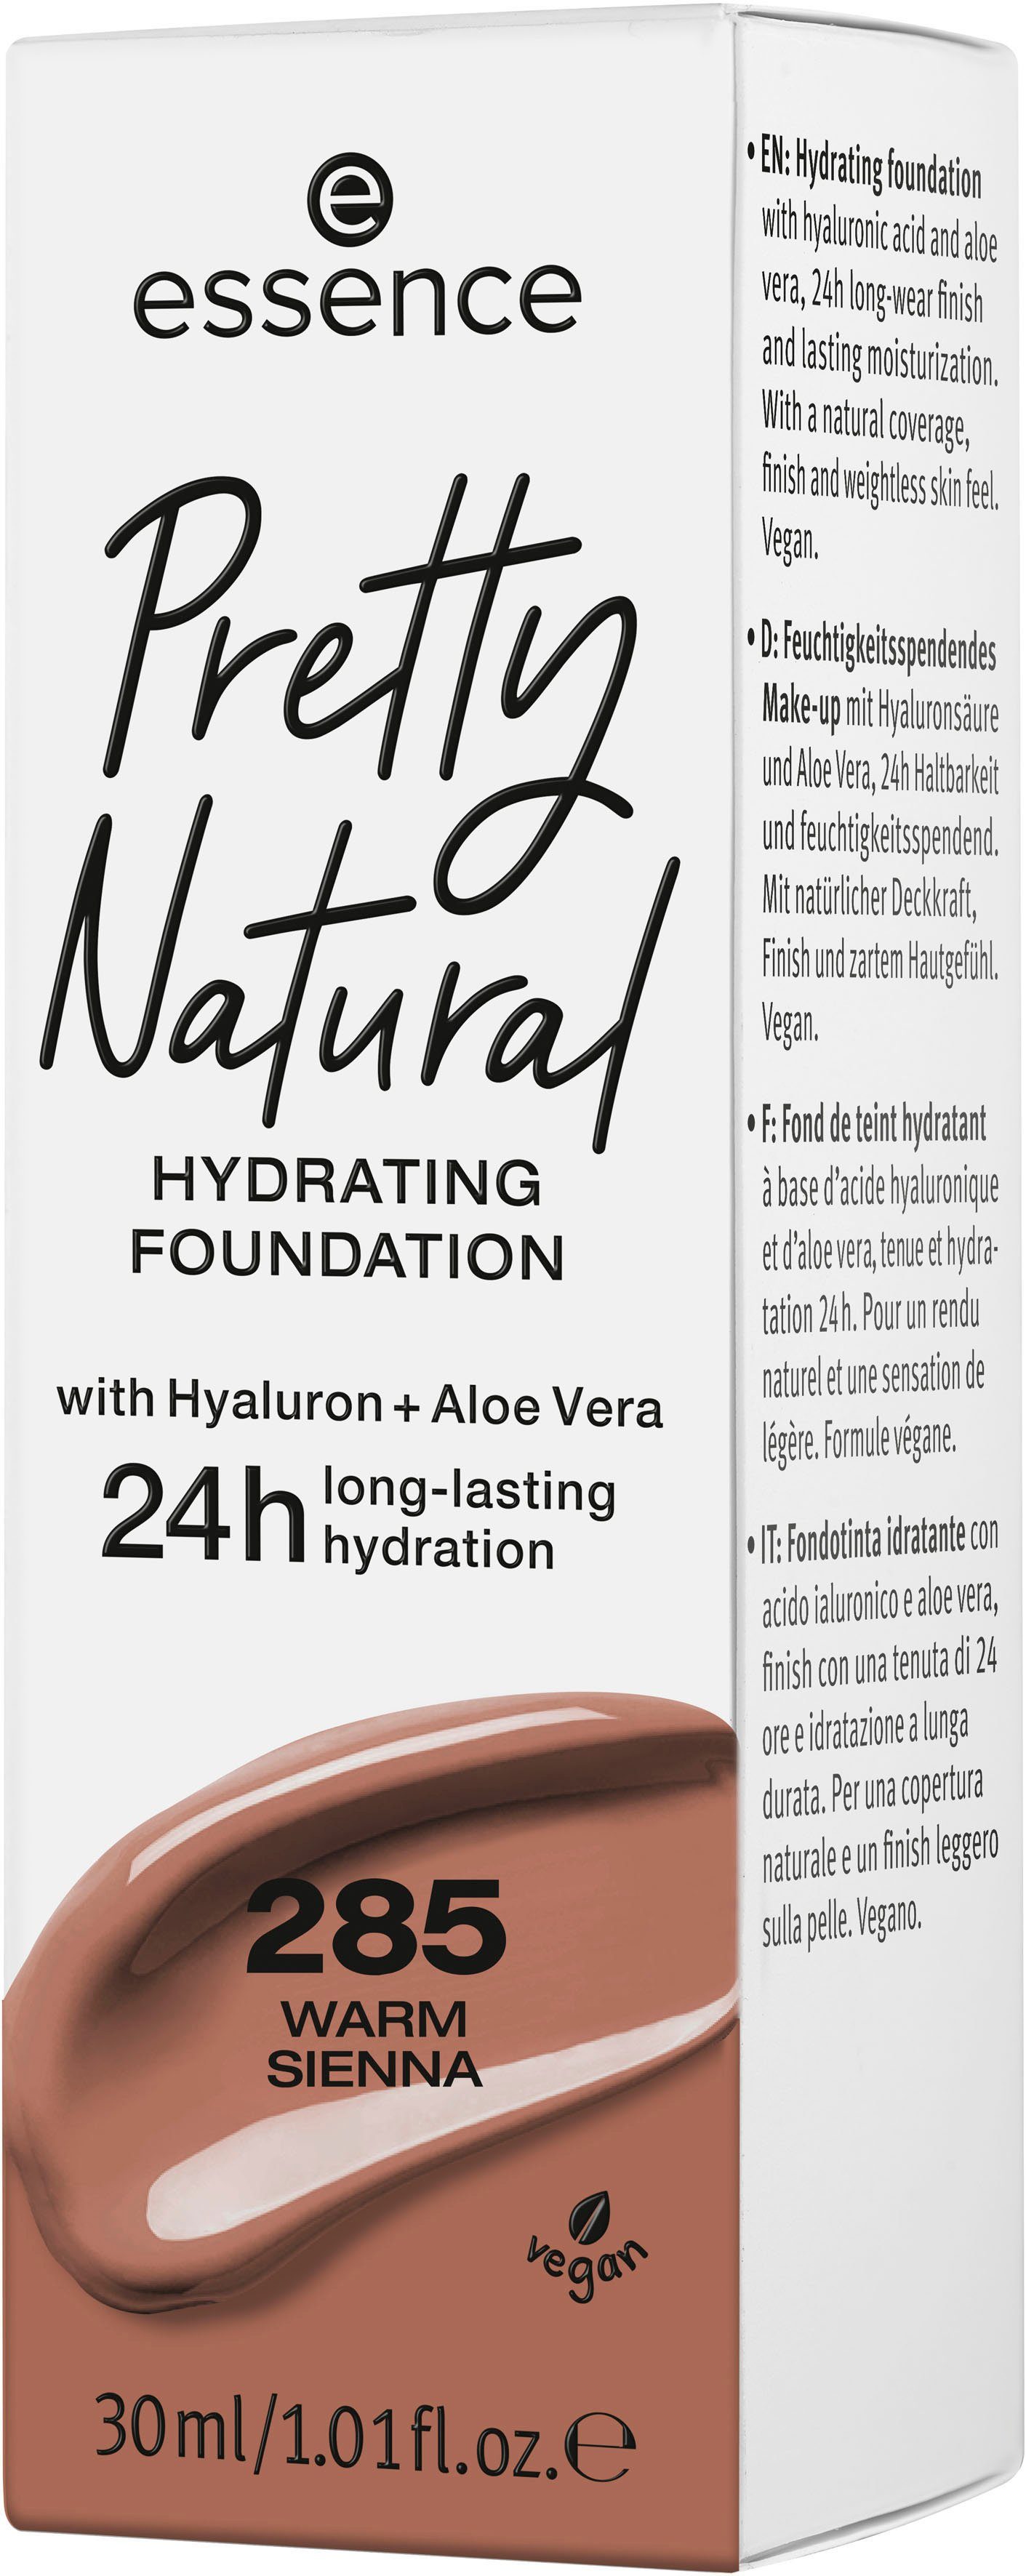 Sienna Warm Essence HYDRATING, Foundation Pretty Natural 3-tlg.